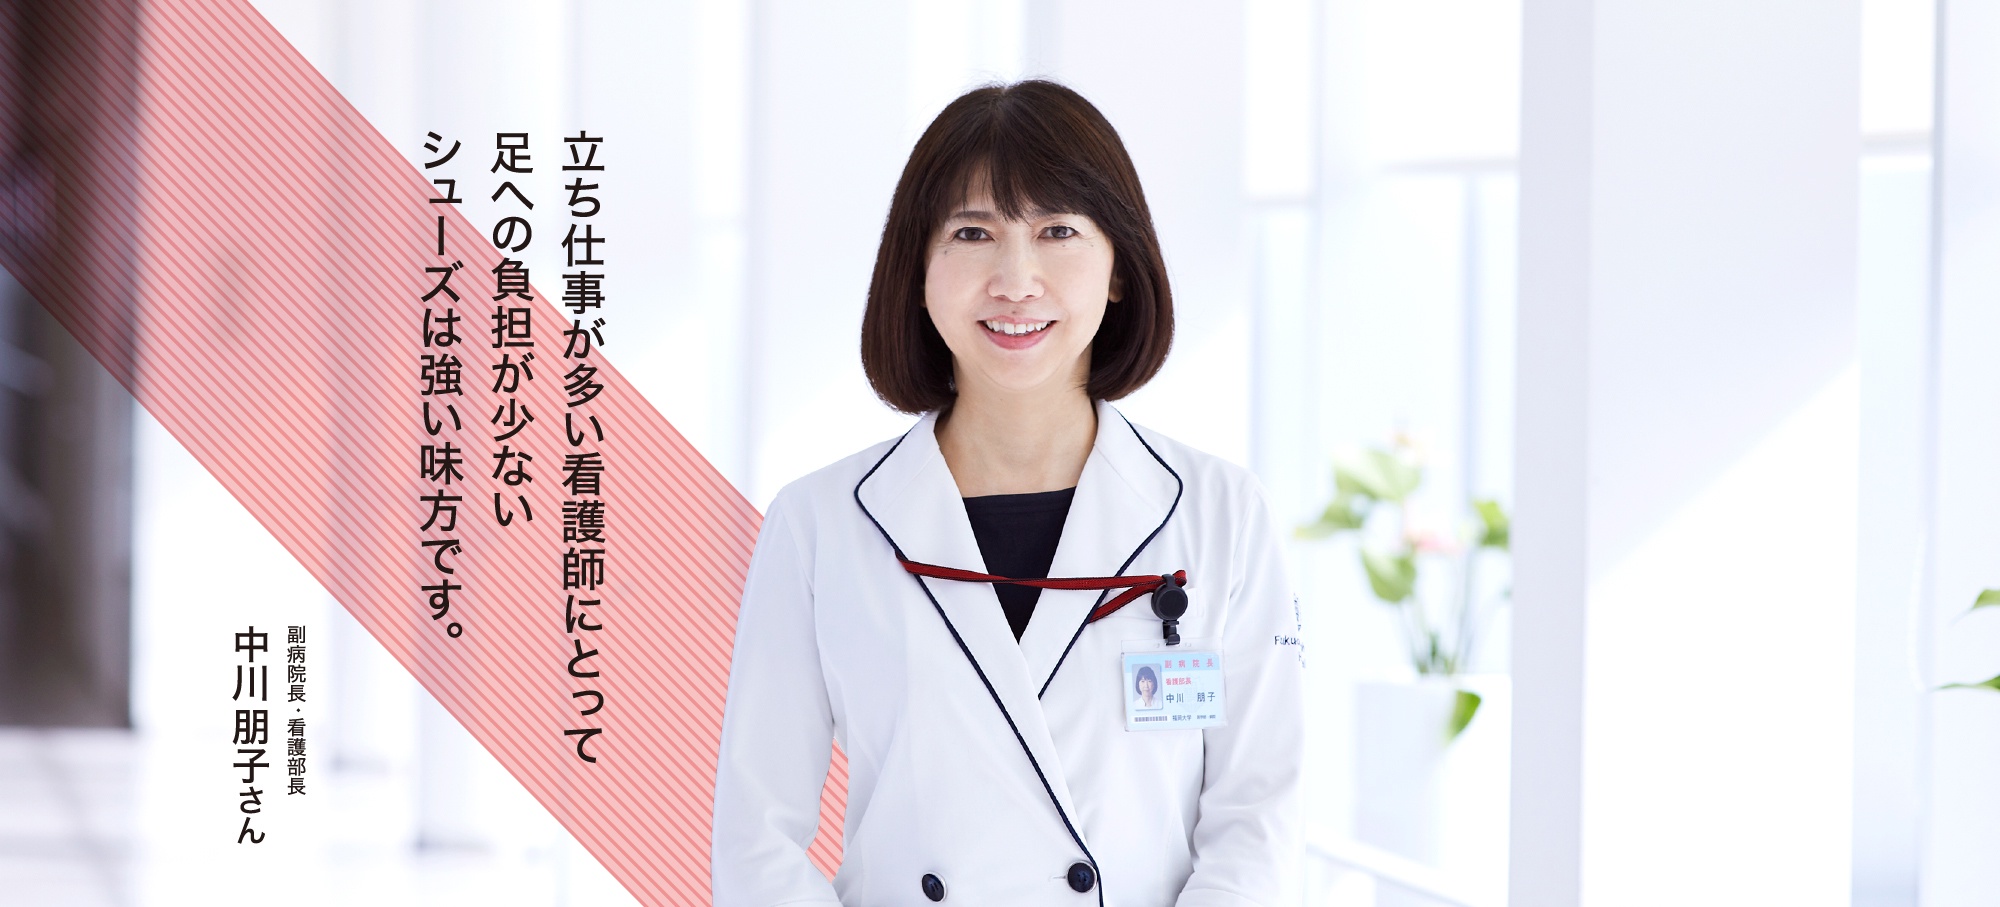 副病院長・看護部長 中川朋子さん 立ち仕事が多い看護師にとって足への負担が少ないシューズは強い味方です。